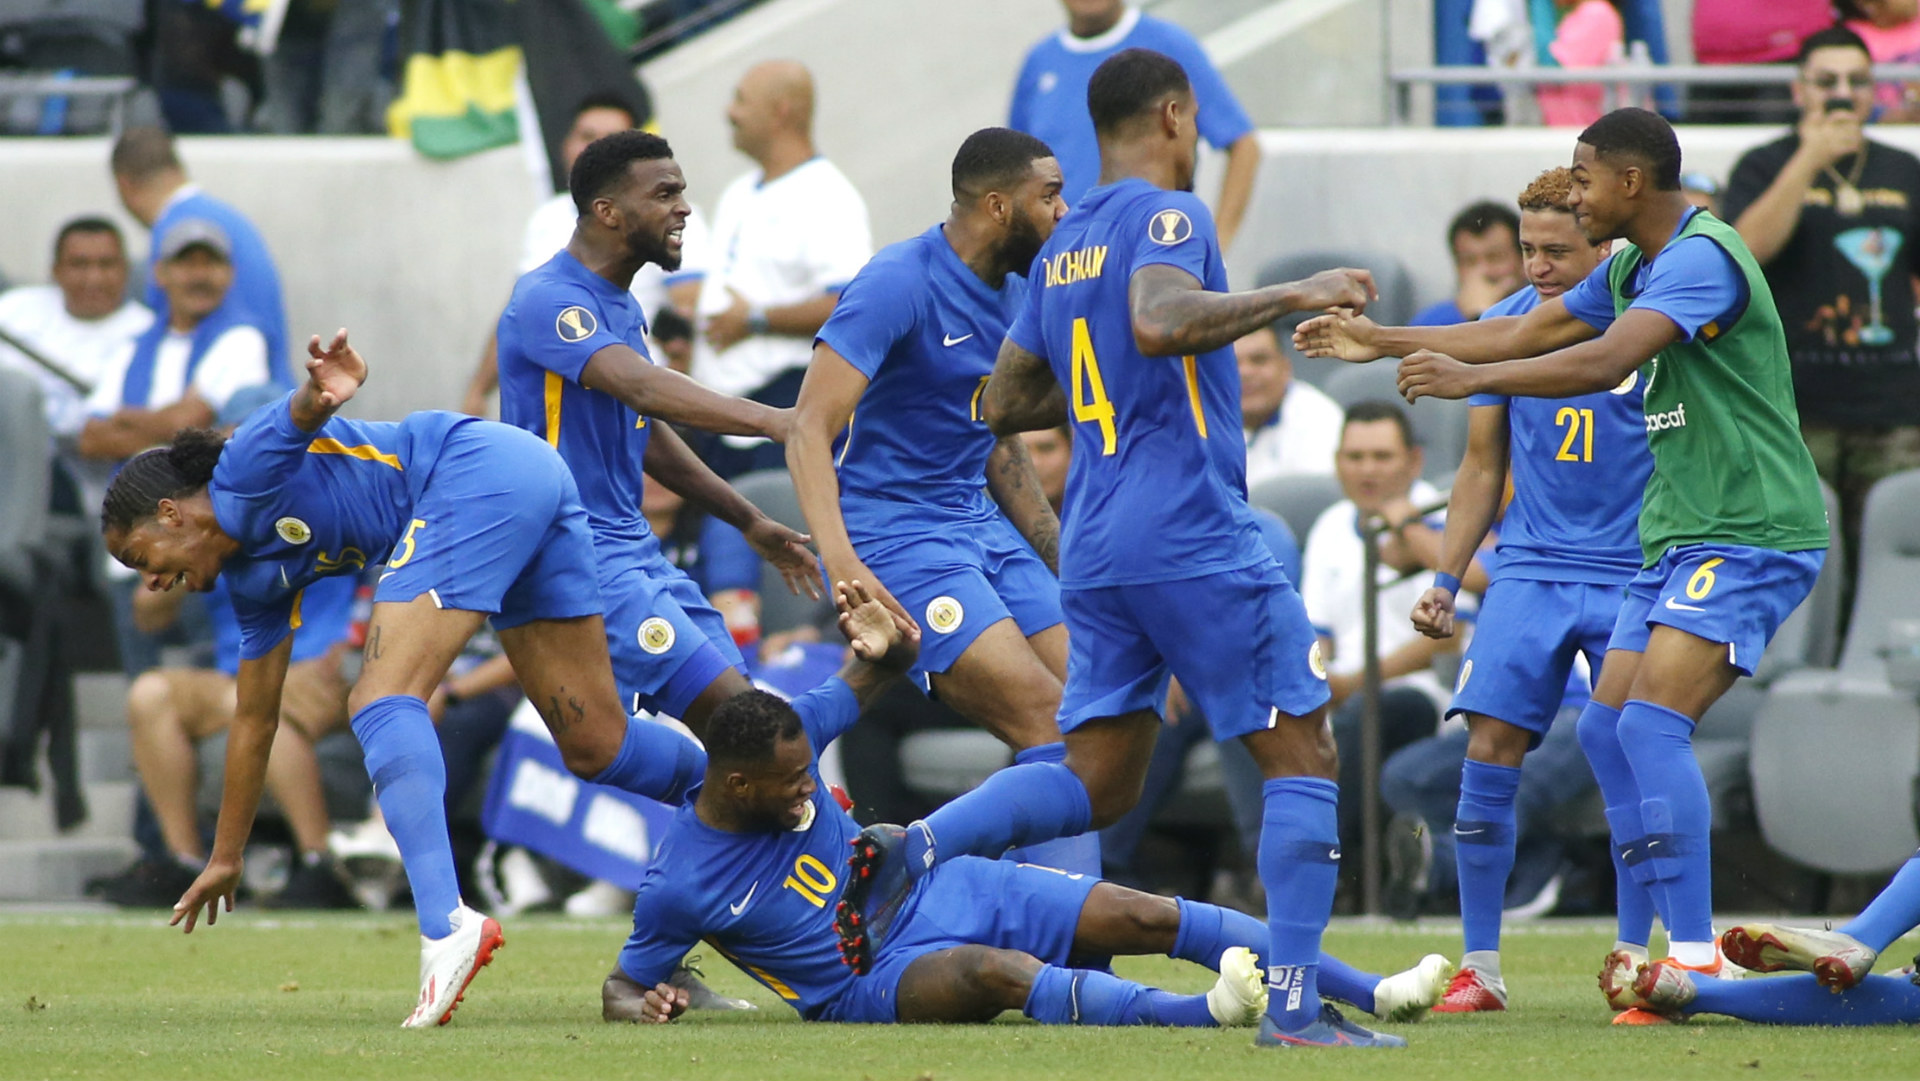 Curacao - Problemas en la Copa Oro, Curazao fuera por Covid-19